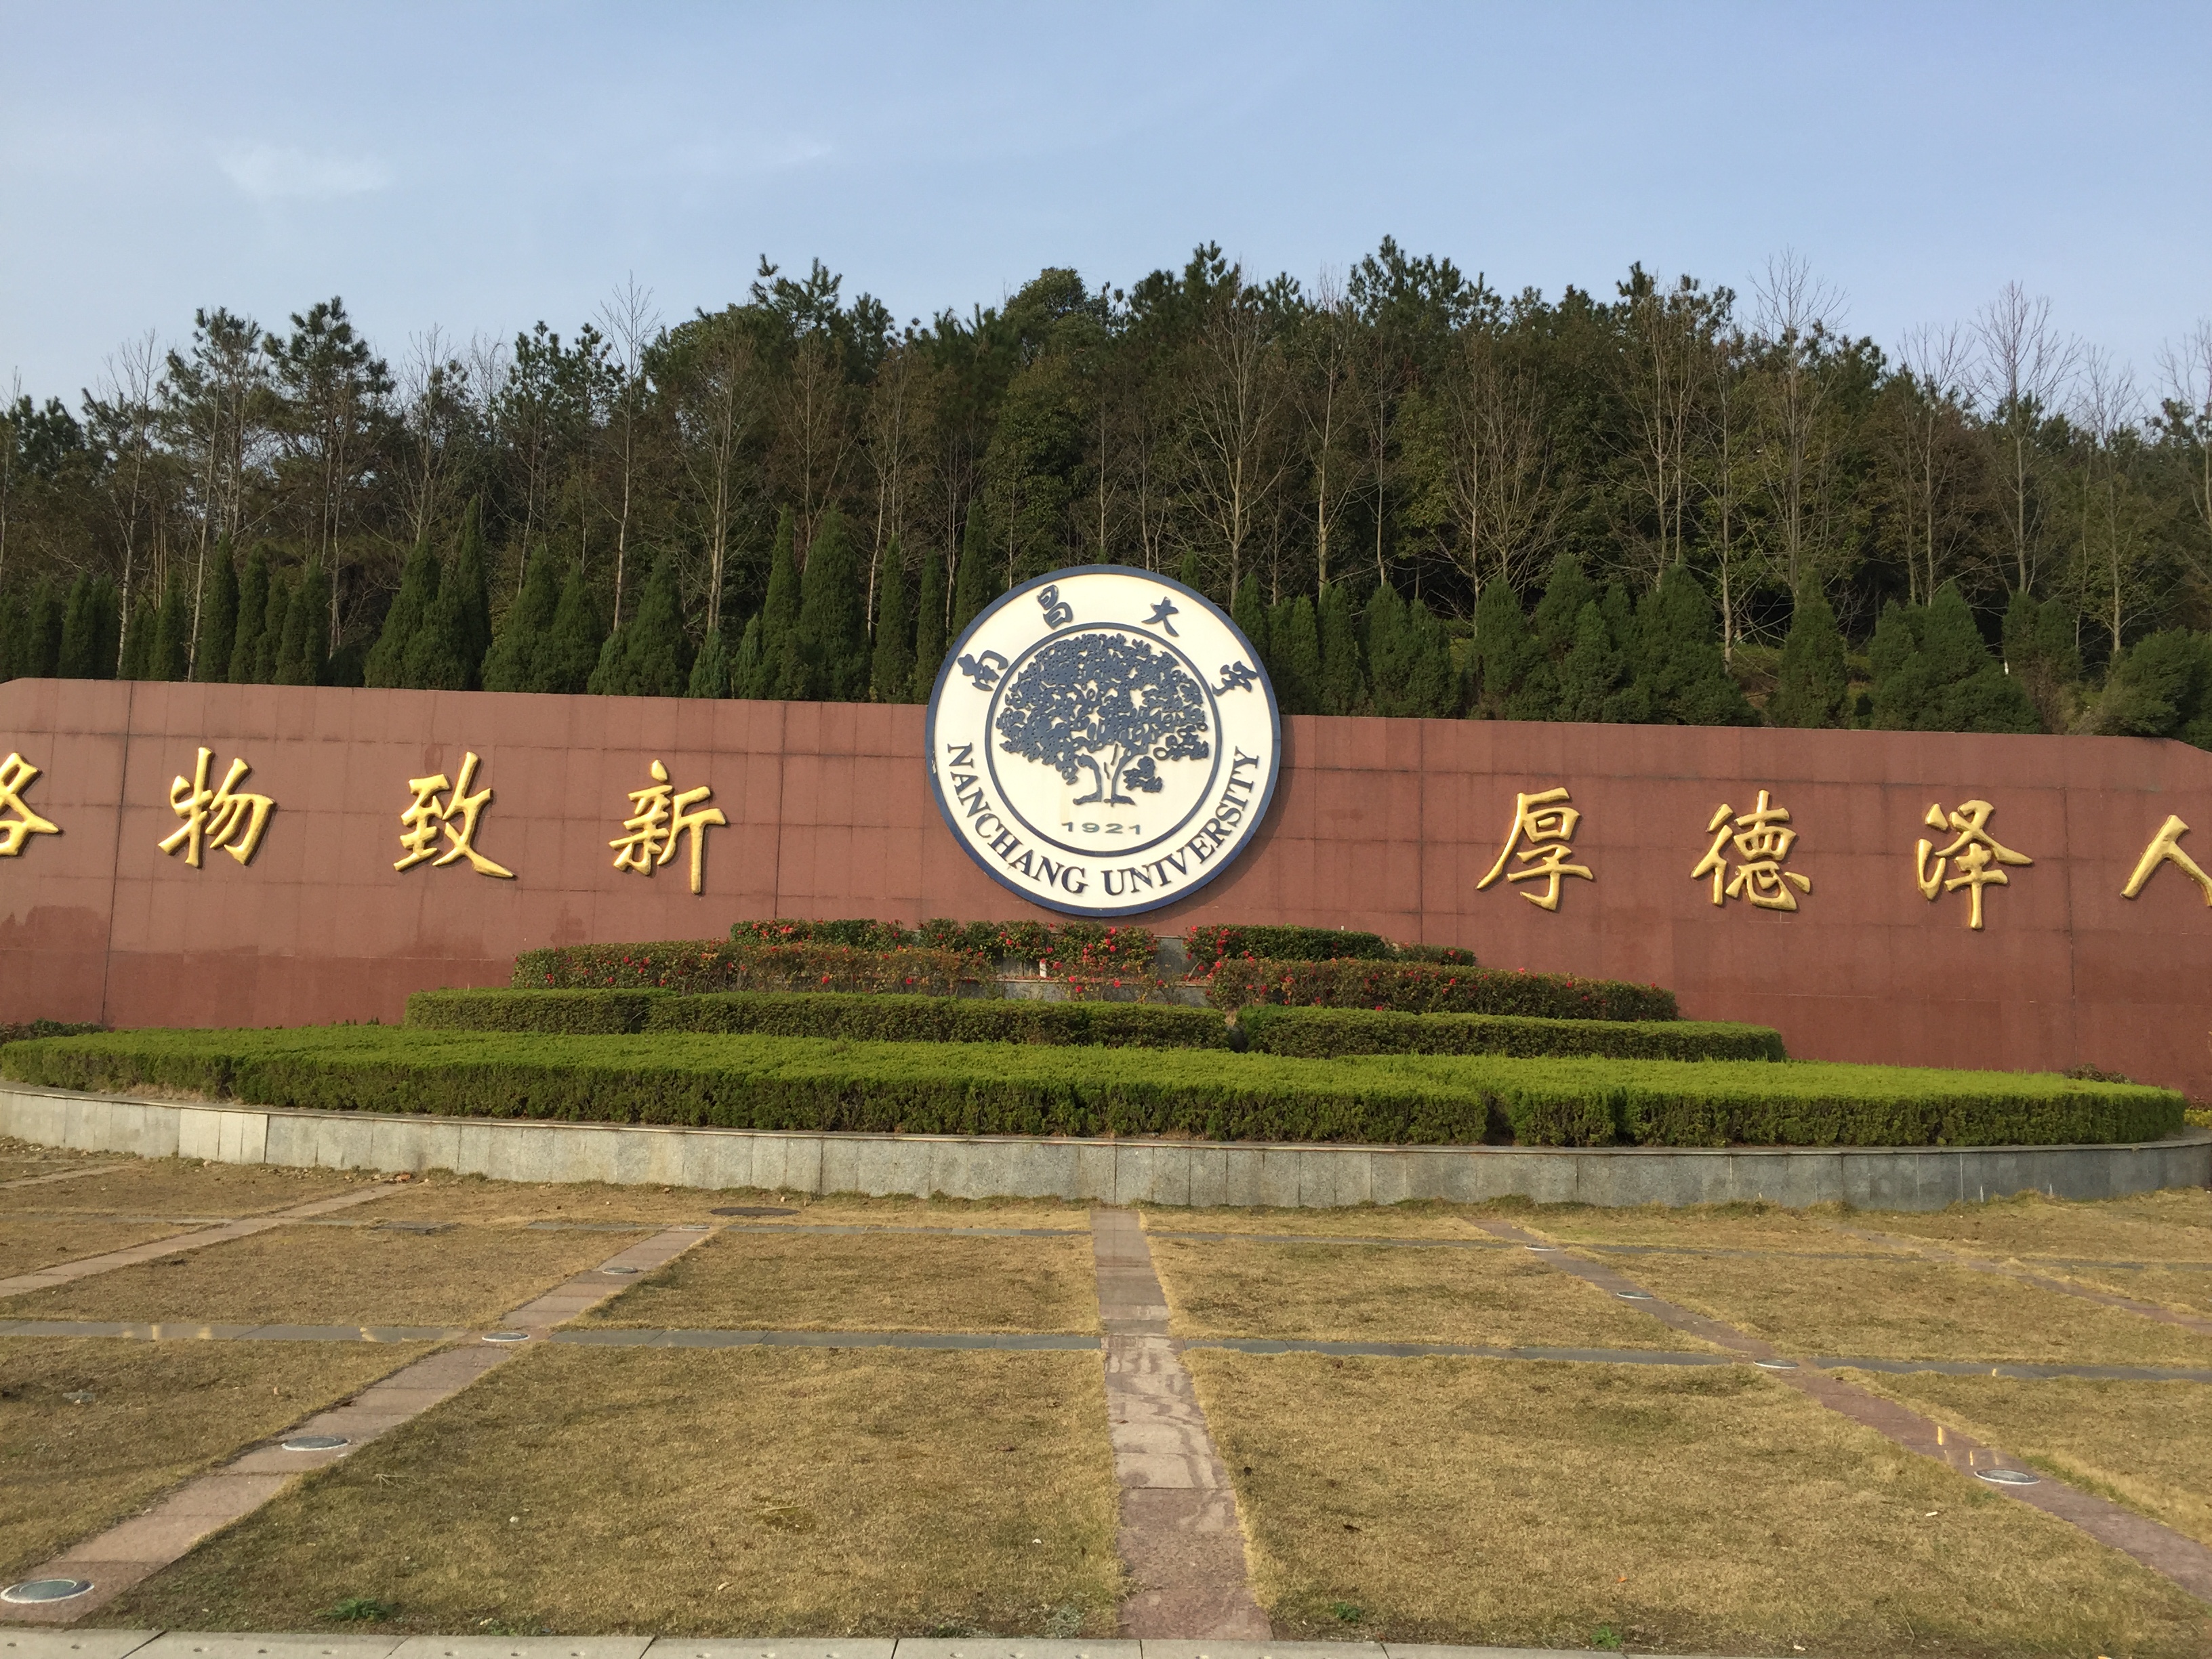 起源于1921年创办的江西公立医学专门学校和1940年创建的国立中正大学